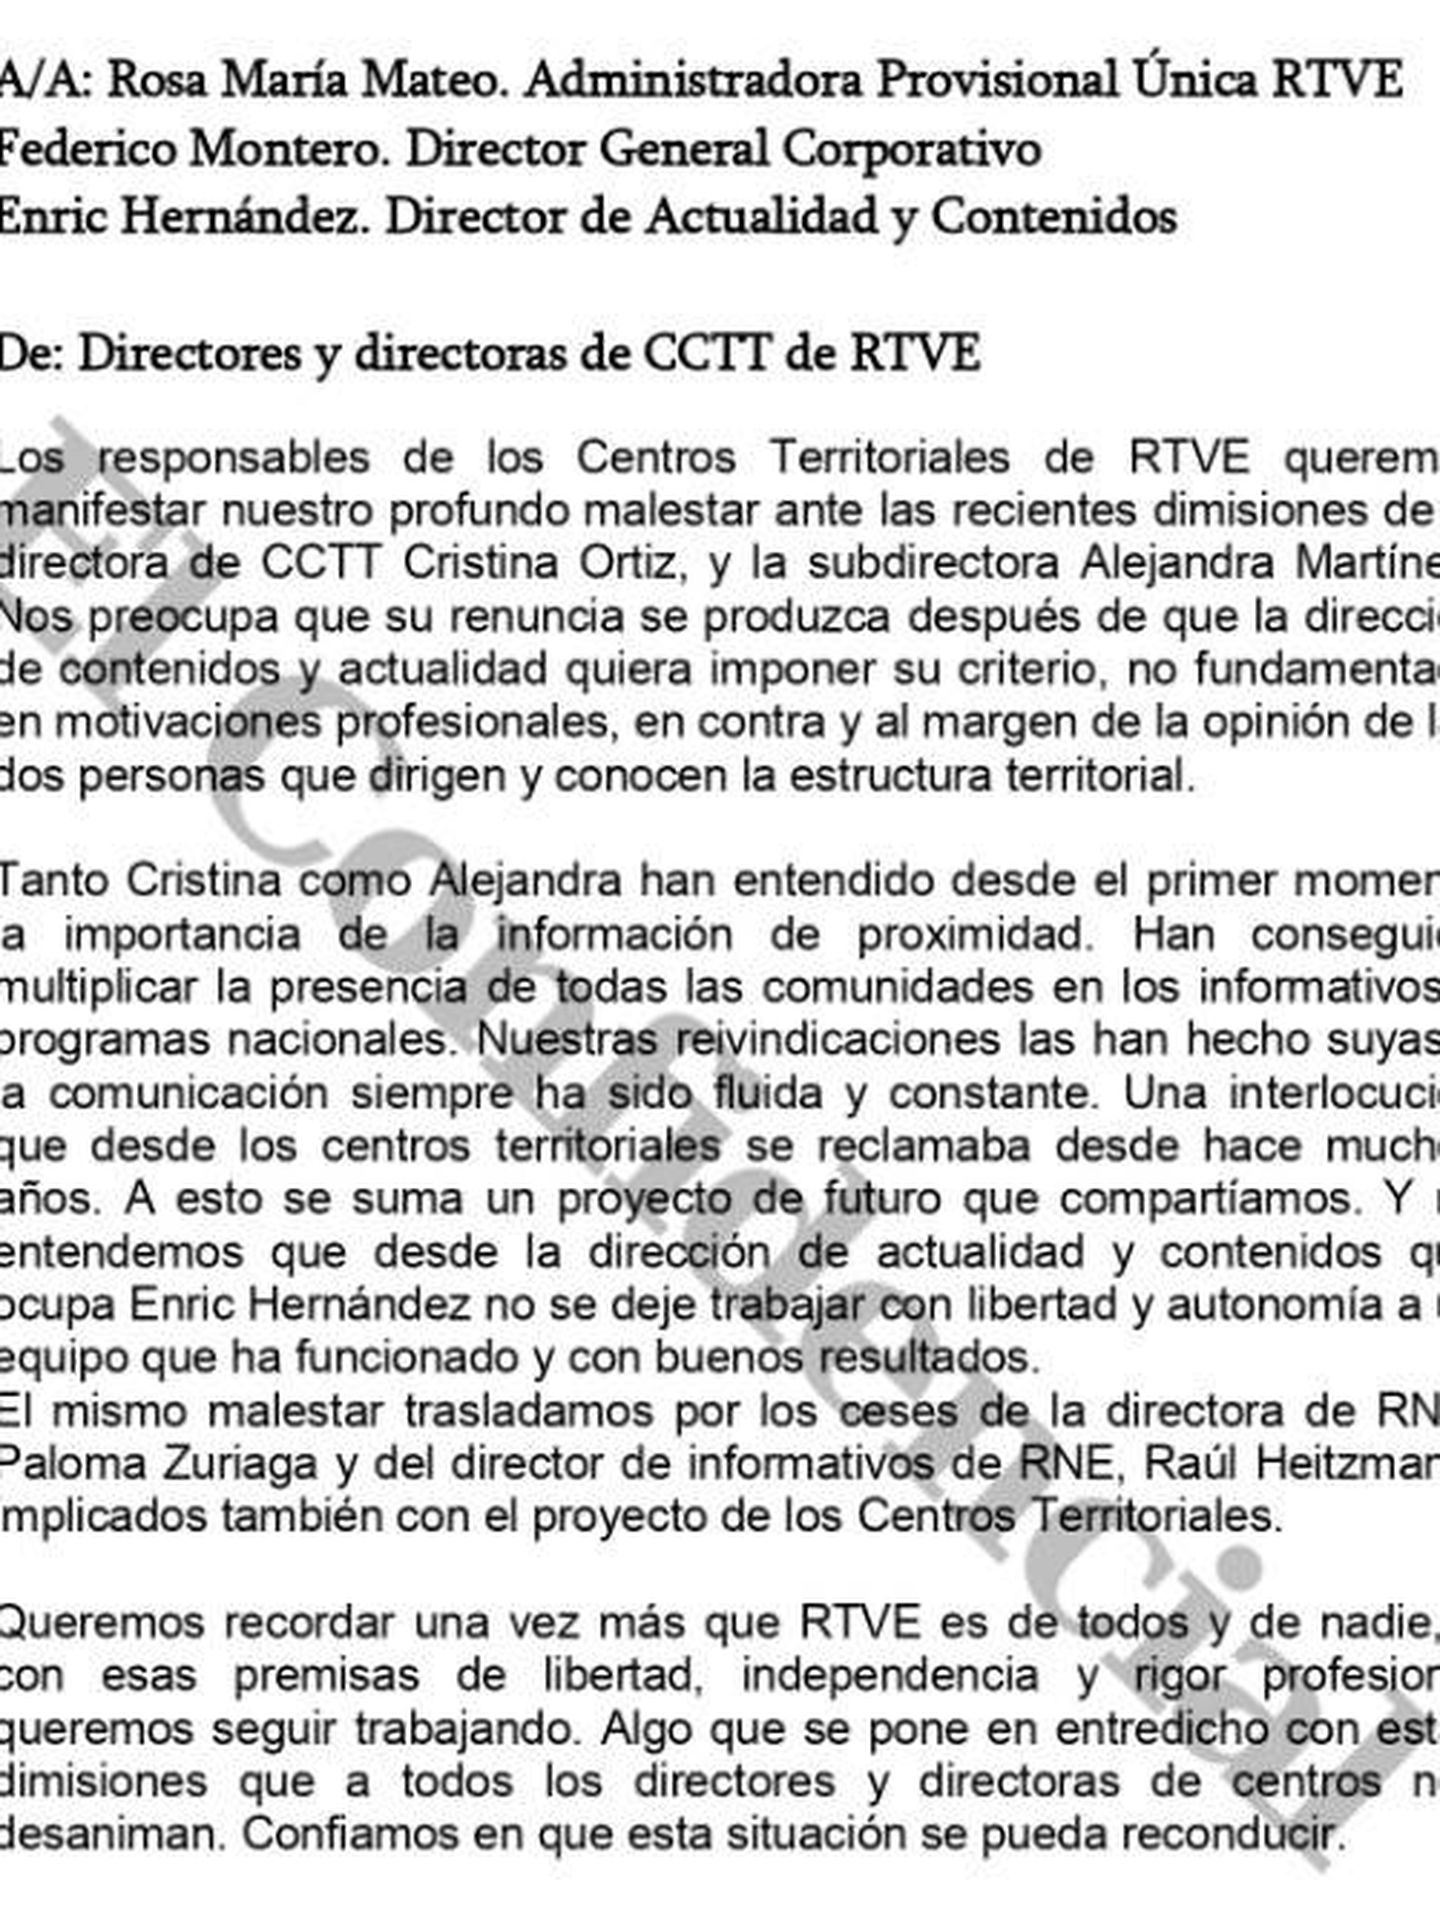 Consulte aquí en PDF la carta de los directores de los centros territoriales de RTVE a Rosa María Mateo y Enric Hernàndez. (EC)